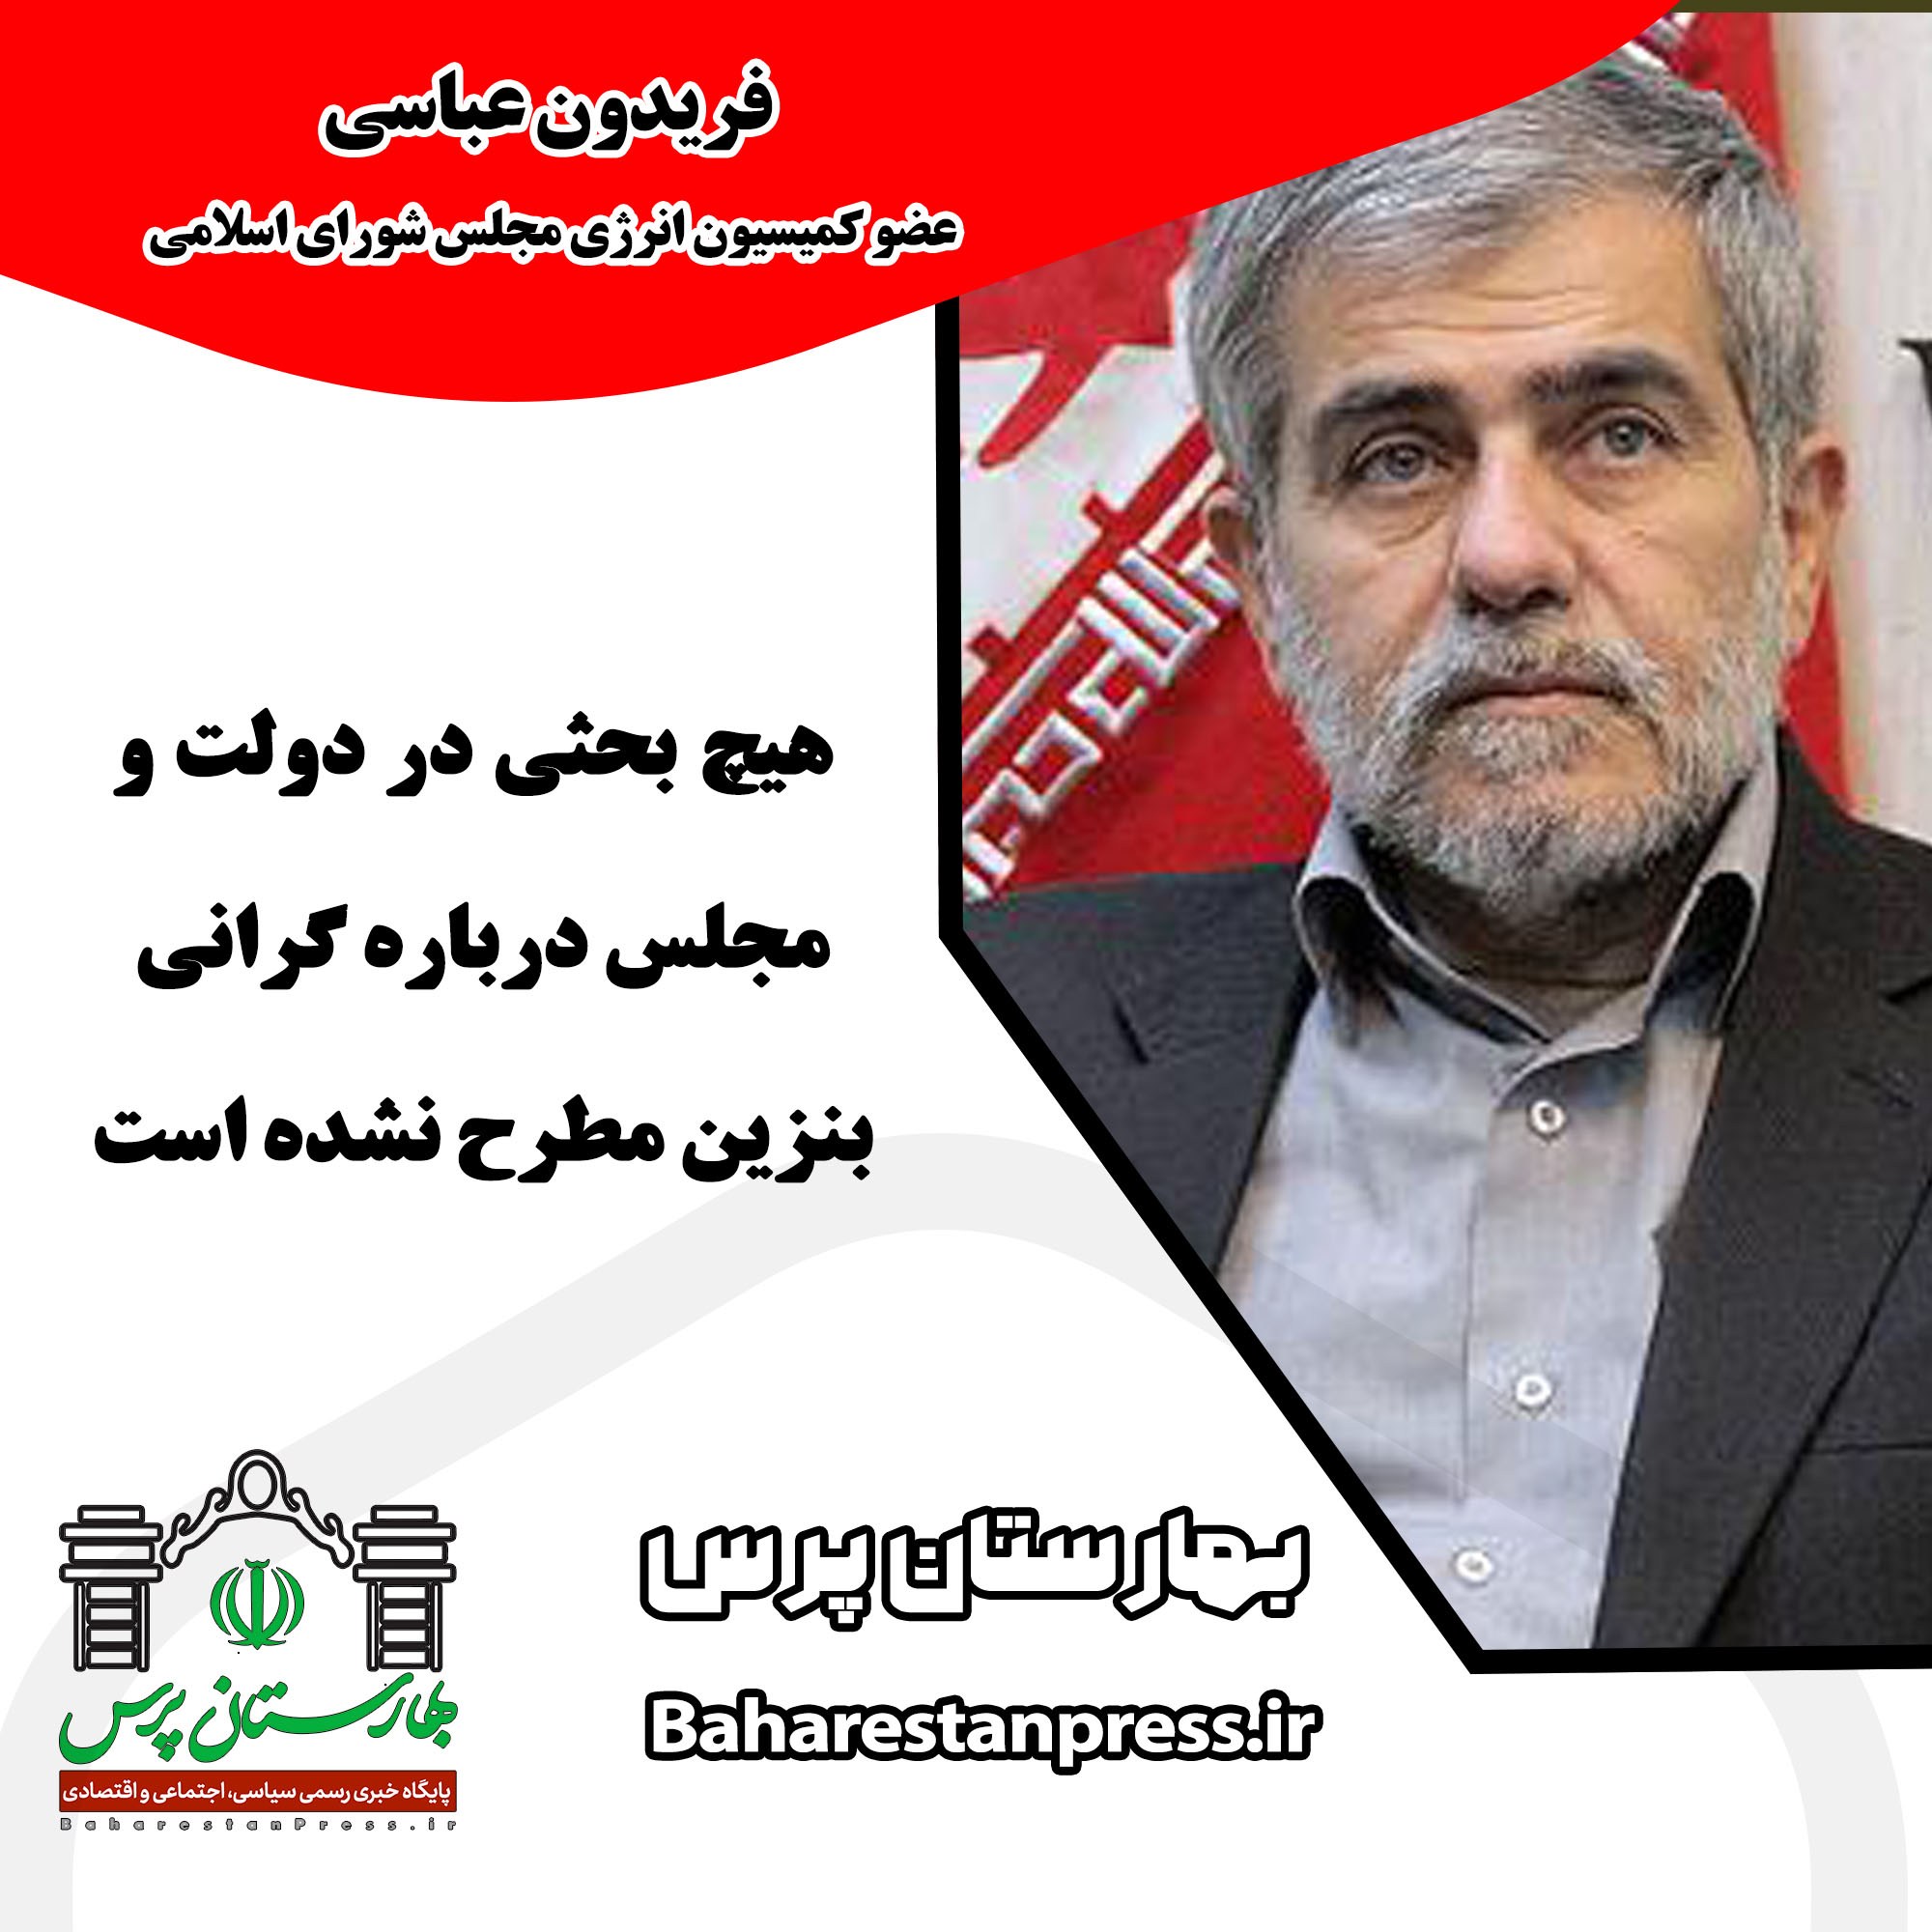 فریدون عباسی ؛ عضو کمیسیون انرژی مجلس شورای اسلامی: هیچ بحثی در دولت و مجلس درباره گرانی بنزین مطرح نشده است